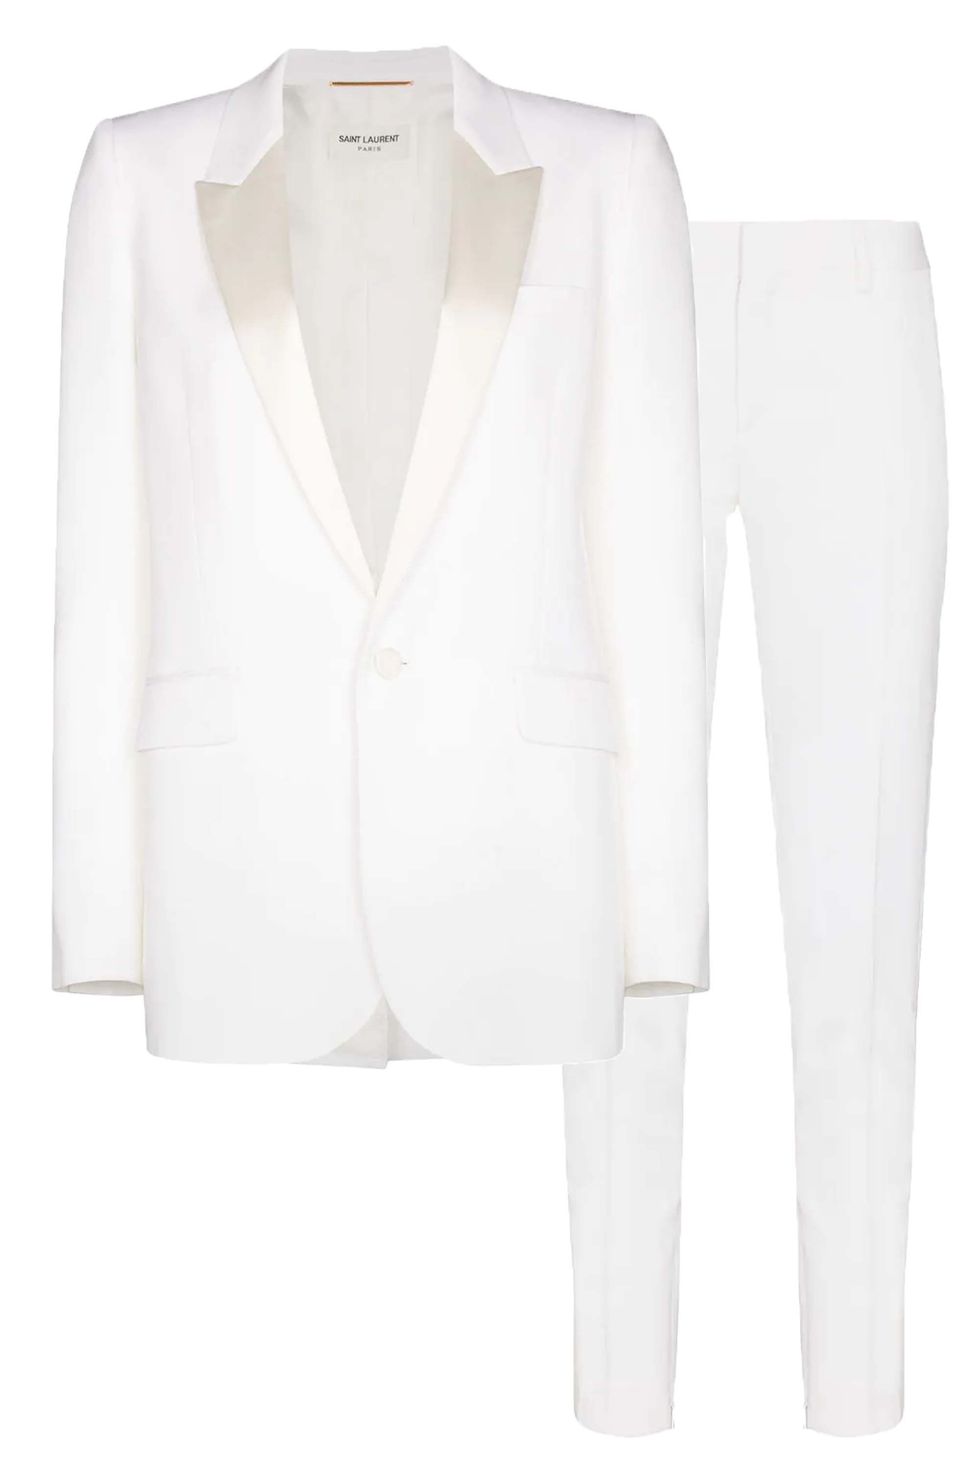 White Skirt Suit Women, Bridal White Wedding Suit, Elegant Skirt